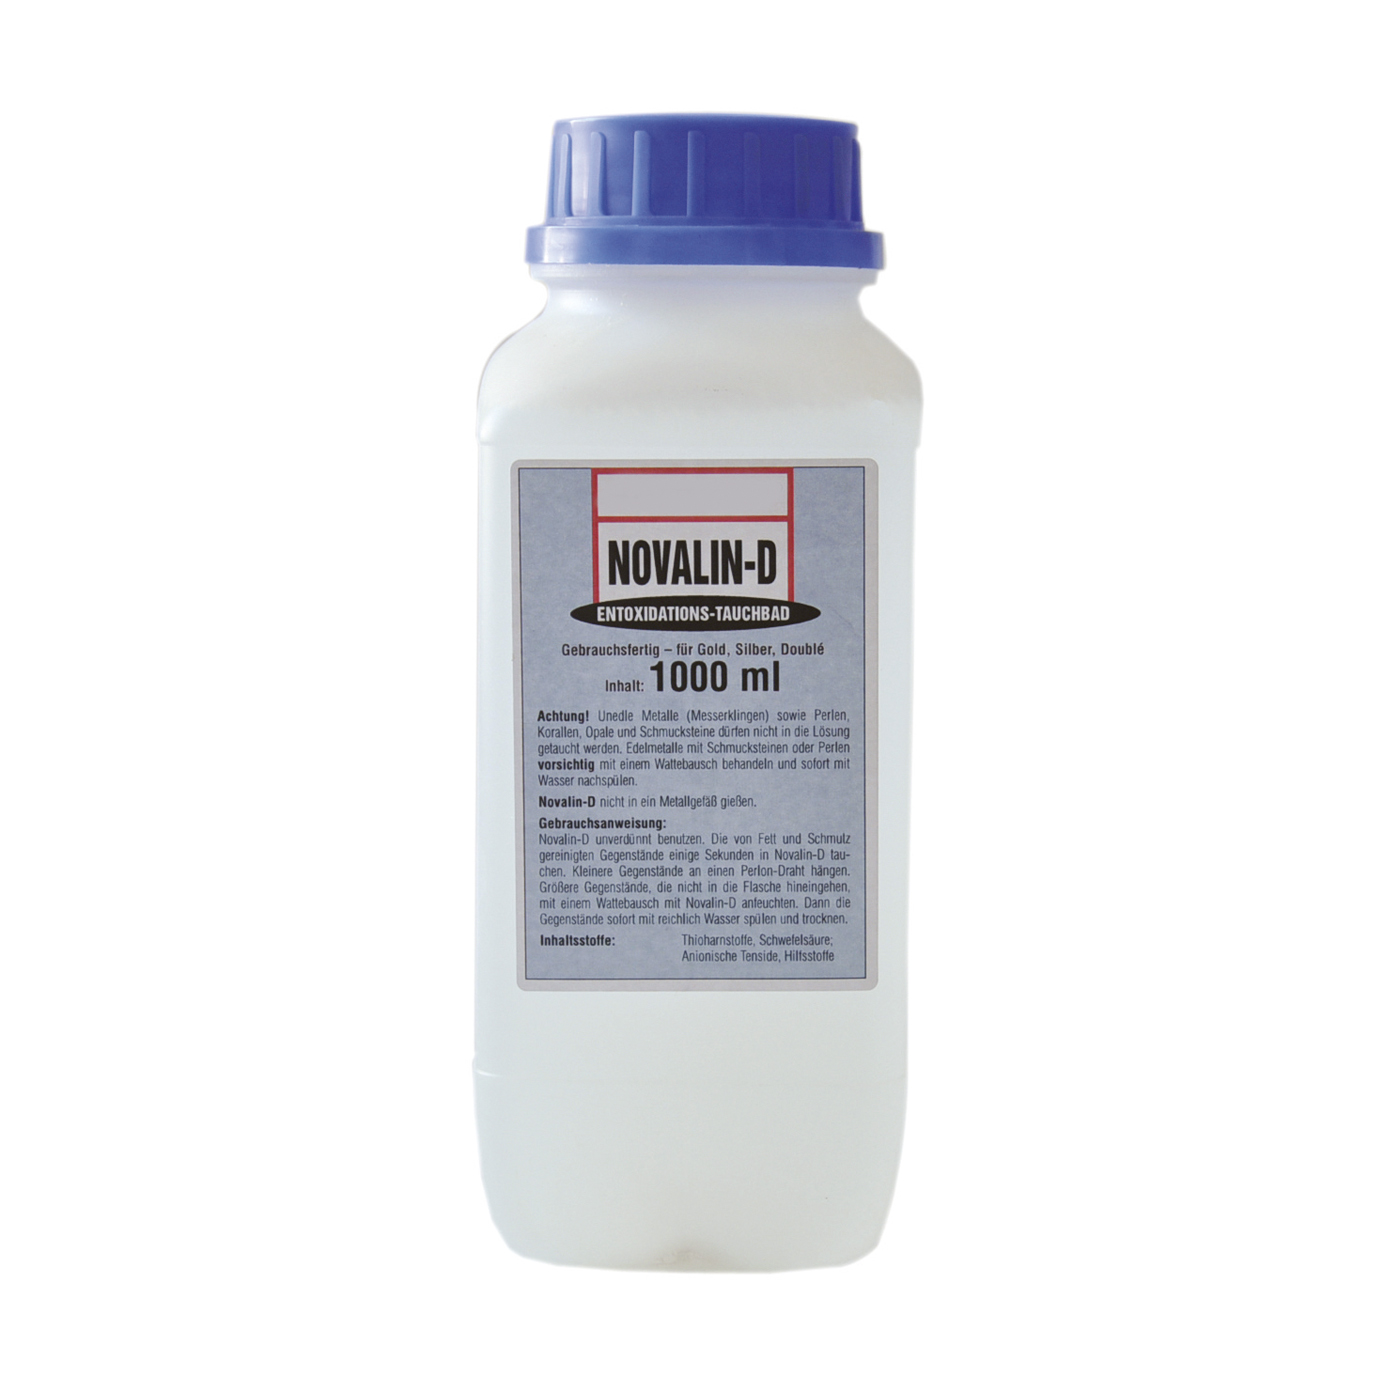 Novalin-D Reinigungsmittel, 1000 ml - 1000 ml